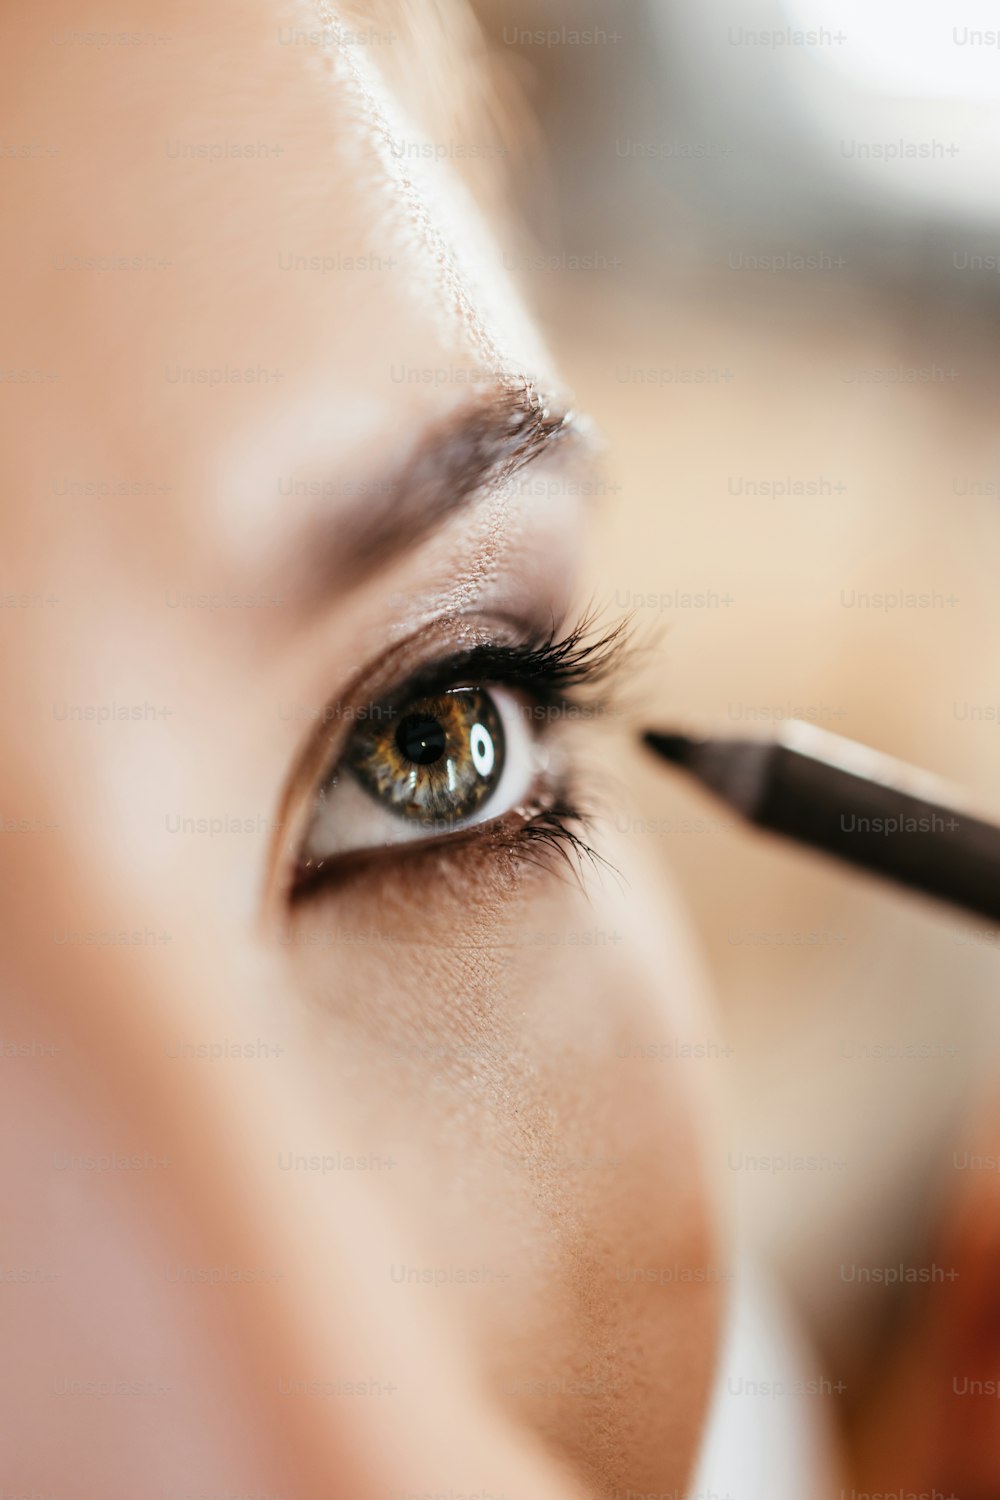 Processo de maquiagem. Artista profissional aplicando maquiagem no rosto e no olho do modelo. Extremo close up macro tiro do olho da mulher bonita. Curta profundidade de campo.